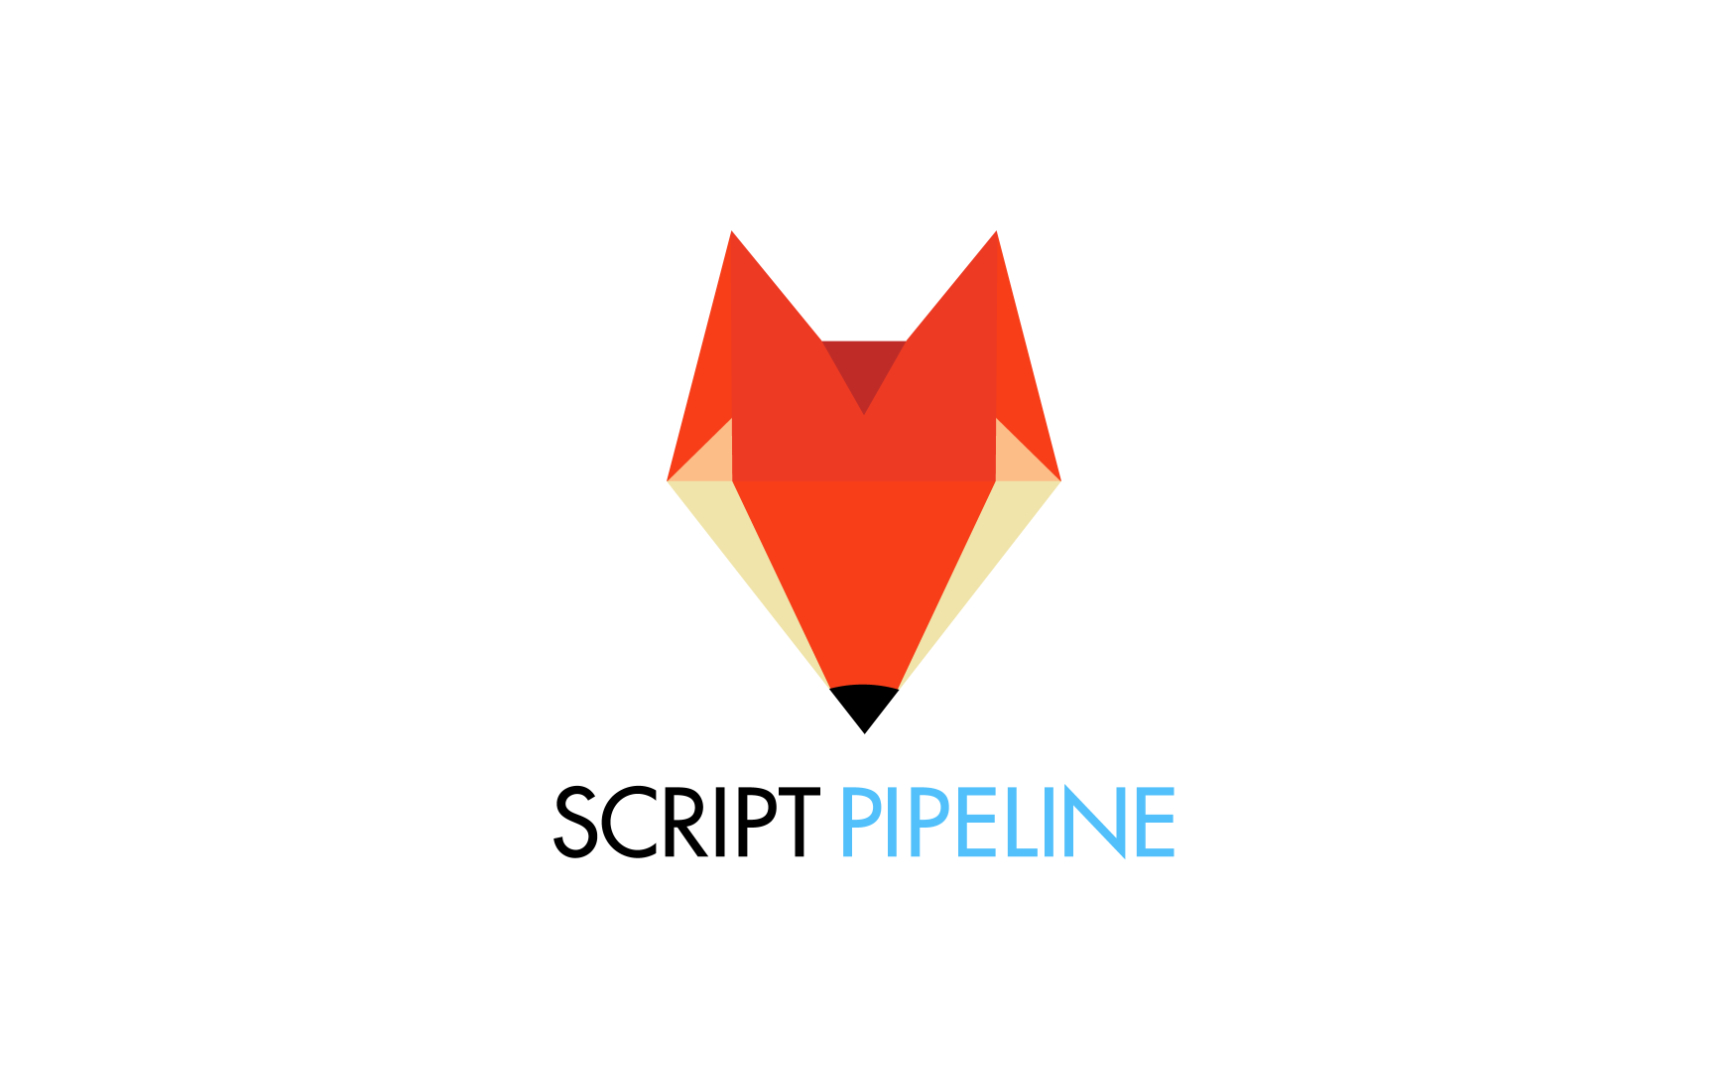 Script pipeline